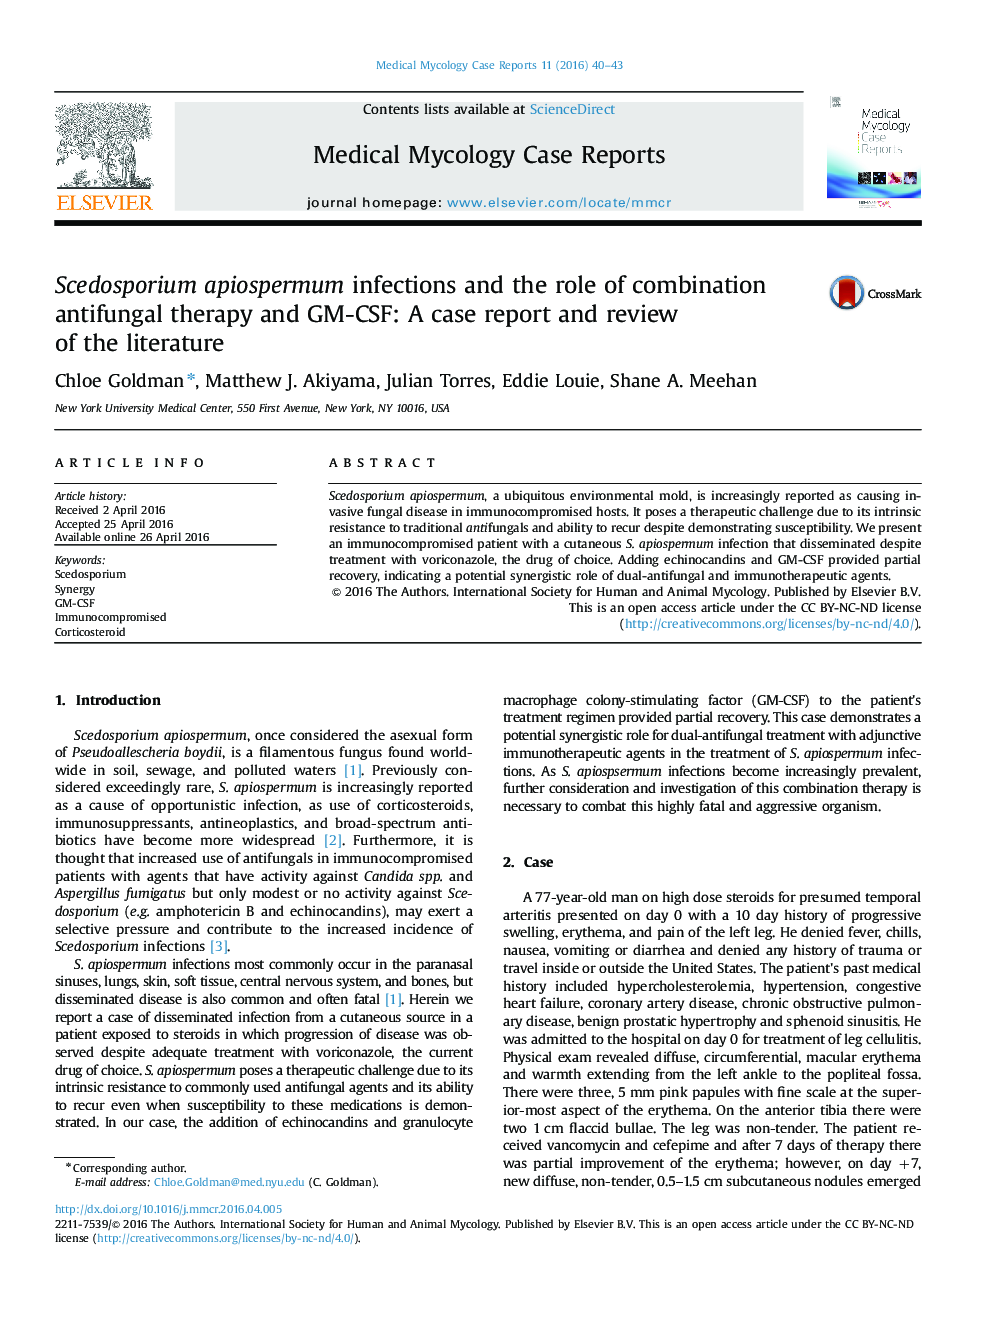 عفونت apiospermum Scedosporium و نقش درمان ترکیبی ضدقارچ و GM-CSF: گزارش یک مورد و بررسی مقالات